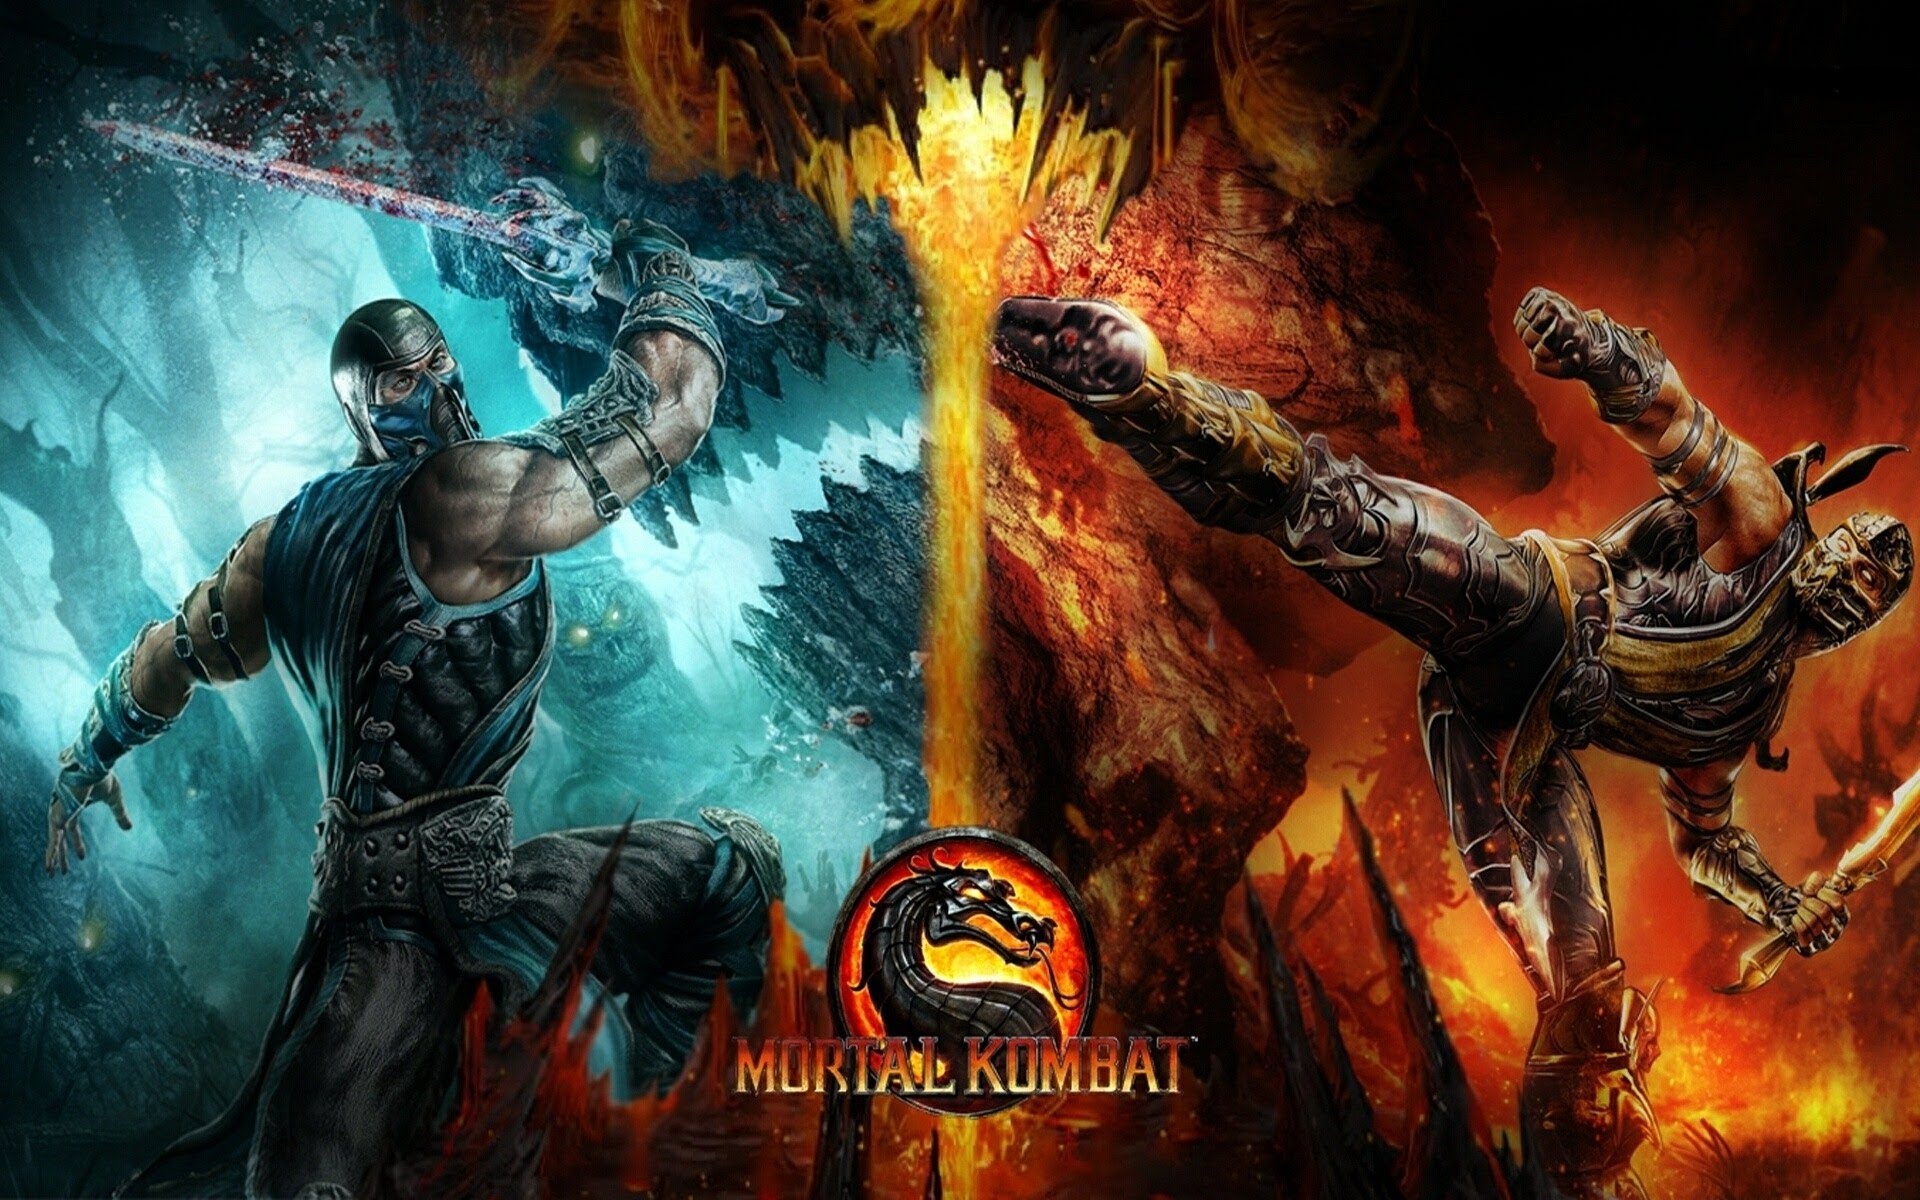 Mortal Kombat X Issue 4, Mortal Kombat Wiki